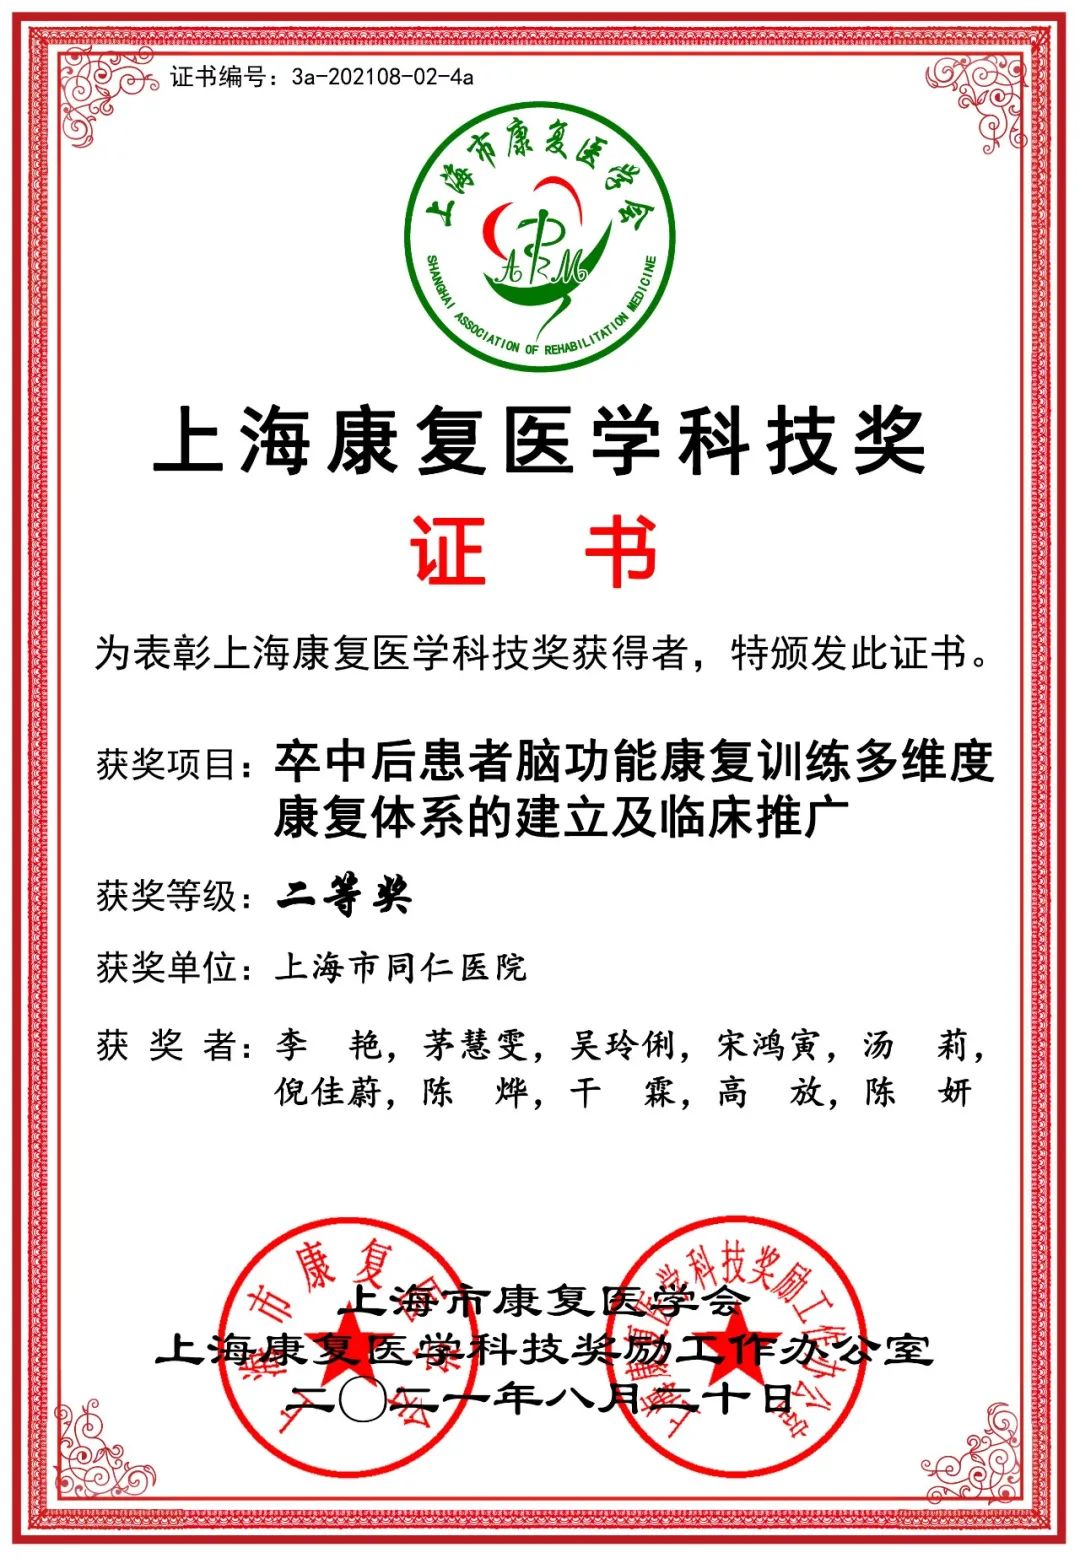 祝贺上海市同仁医院康复科、普外科团队分获上海康复医学科技奖二等奖